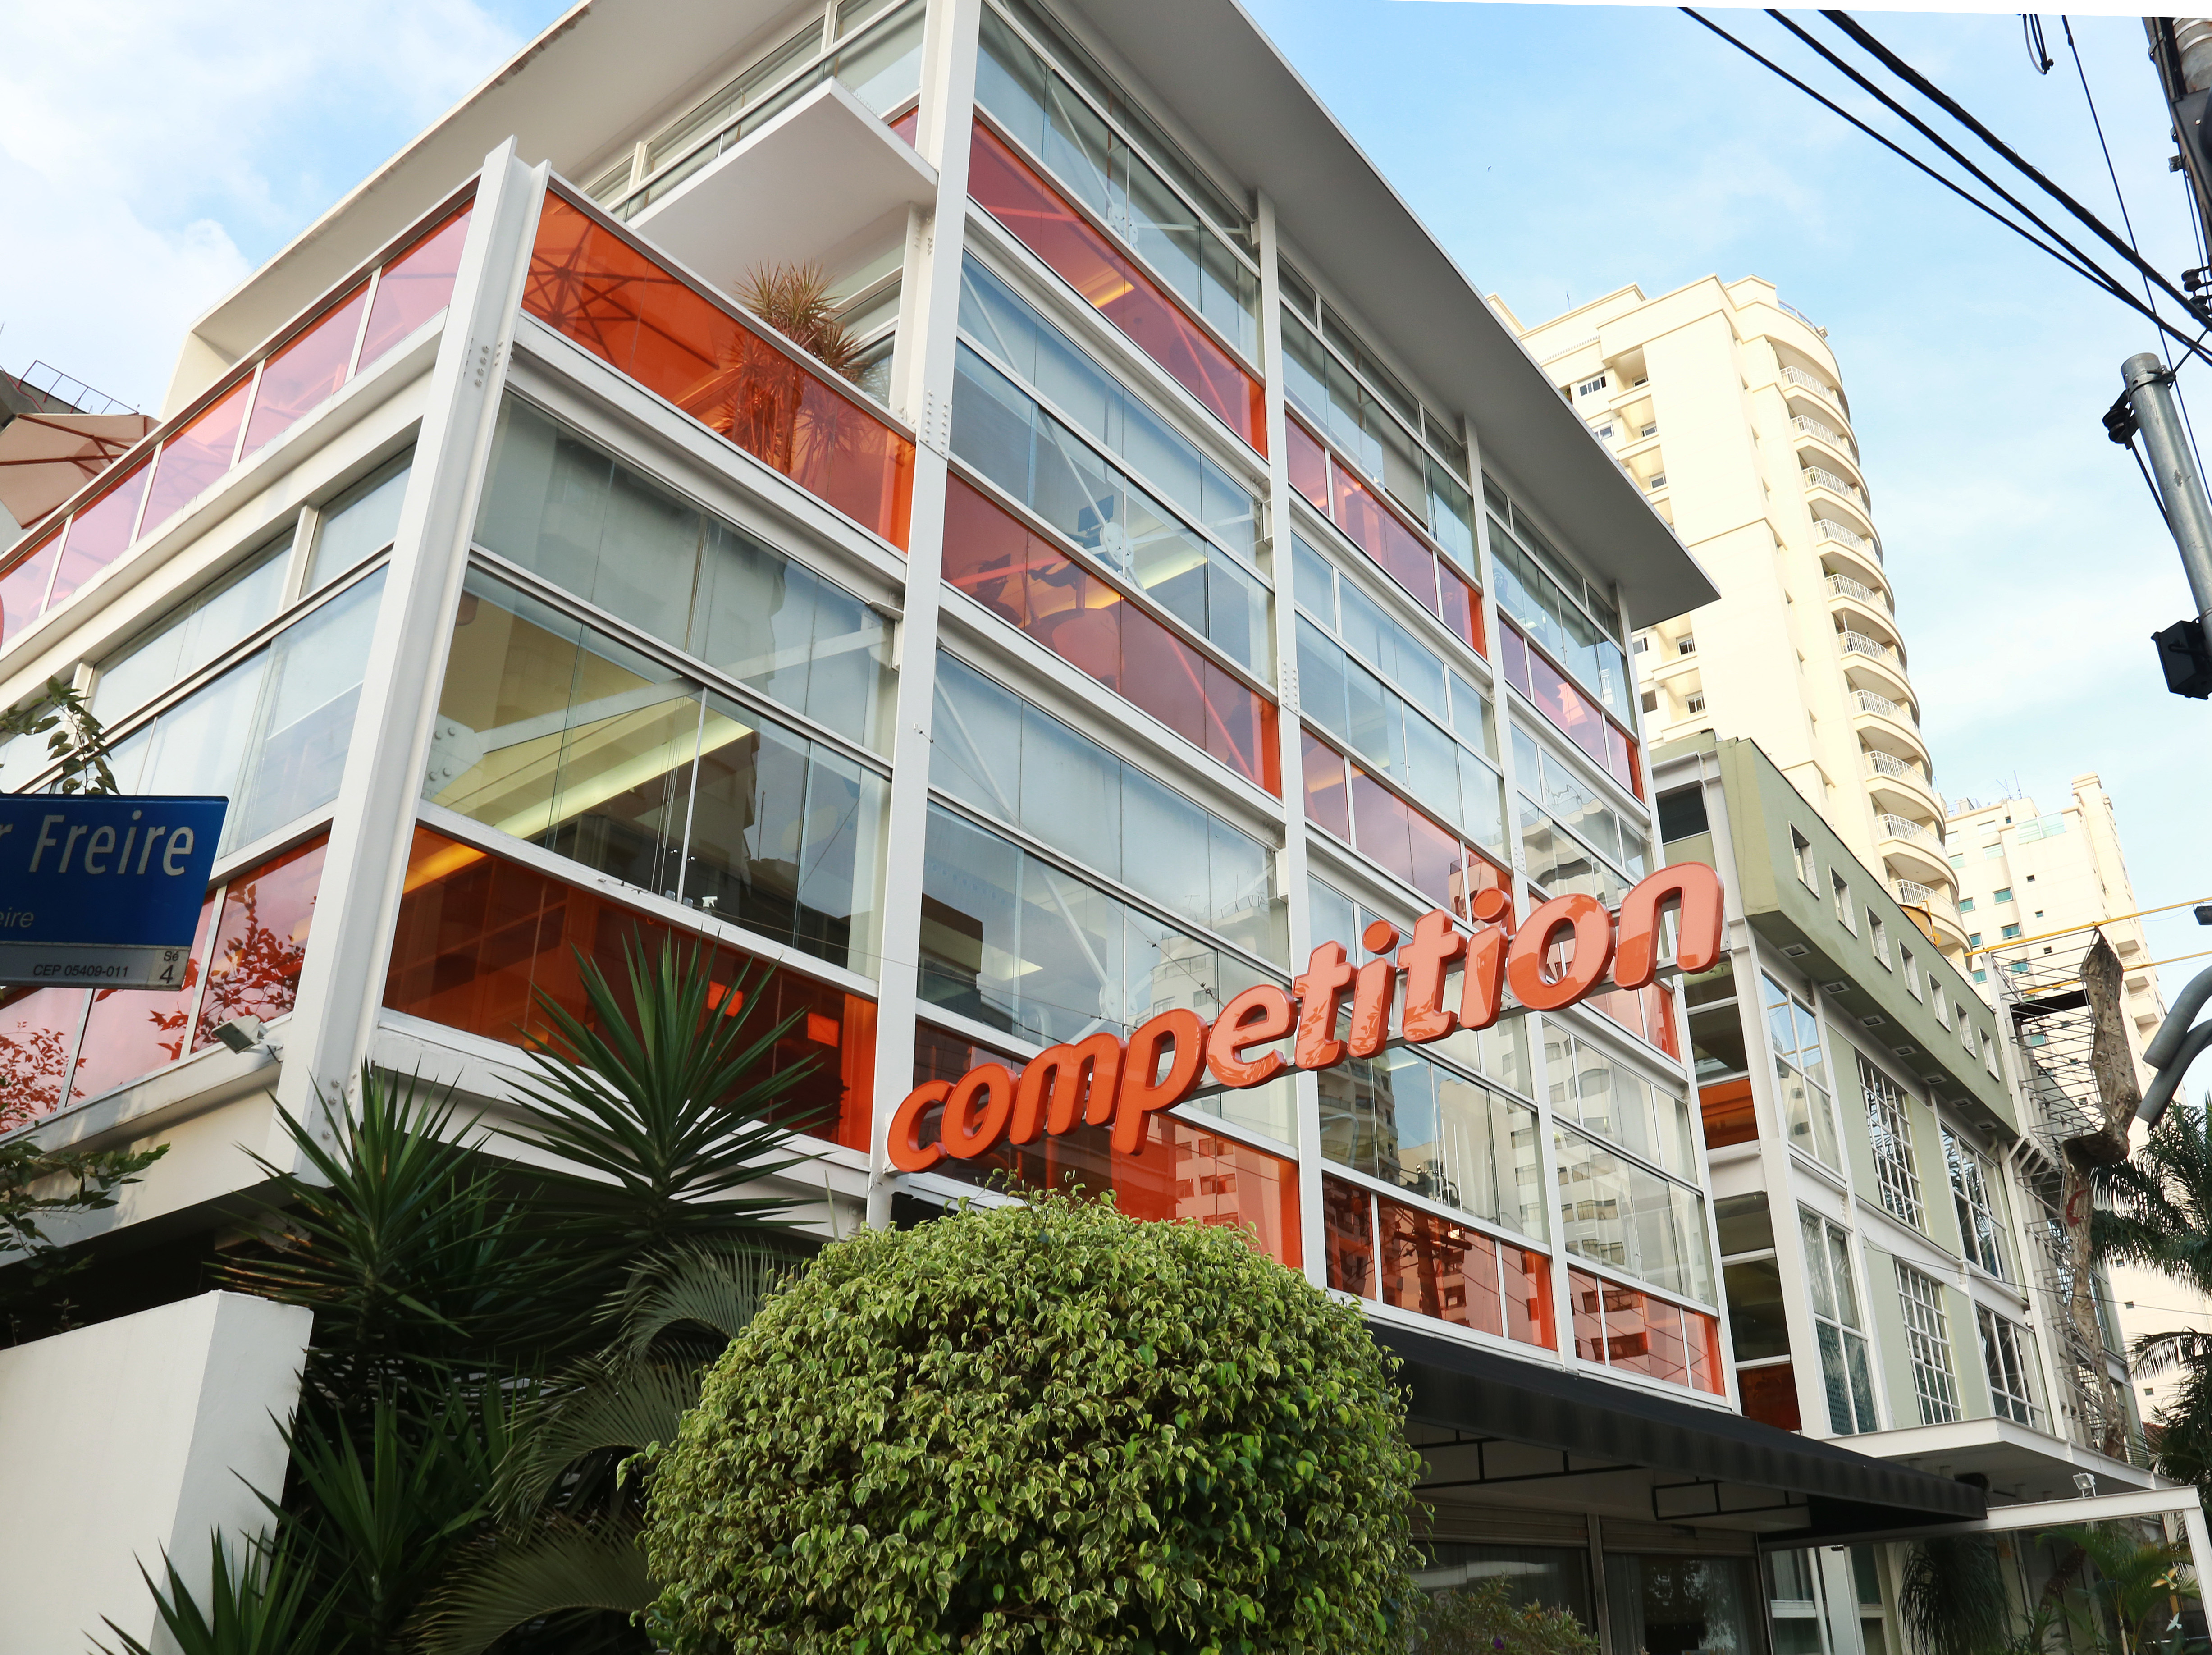 Imagem mostra um prédio com vidros transparentes e laranjas e uma placa escrita "competition"